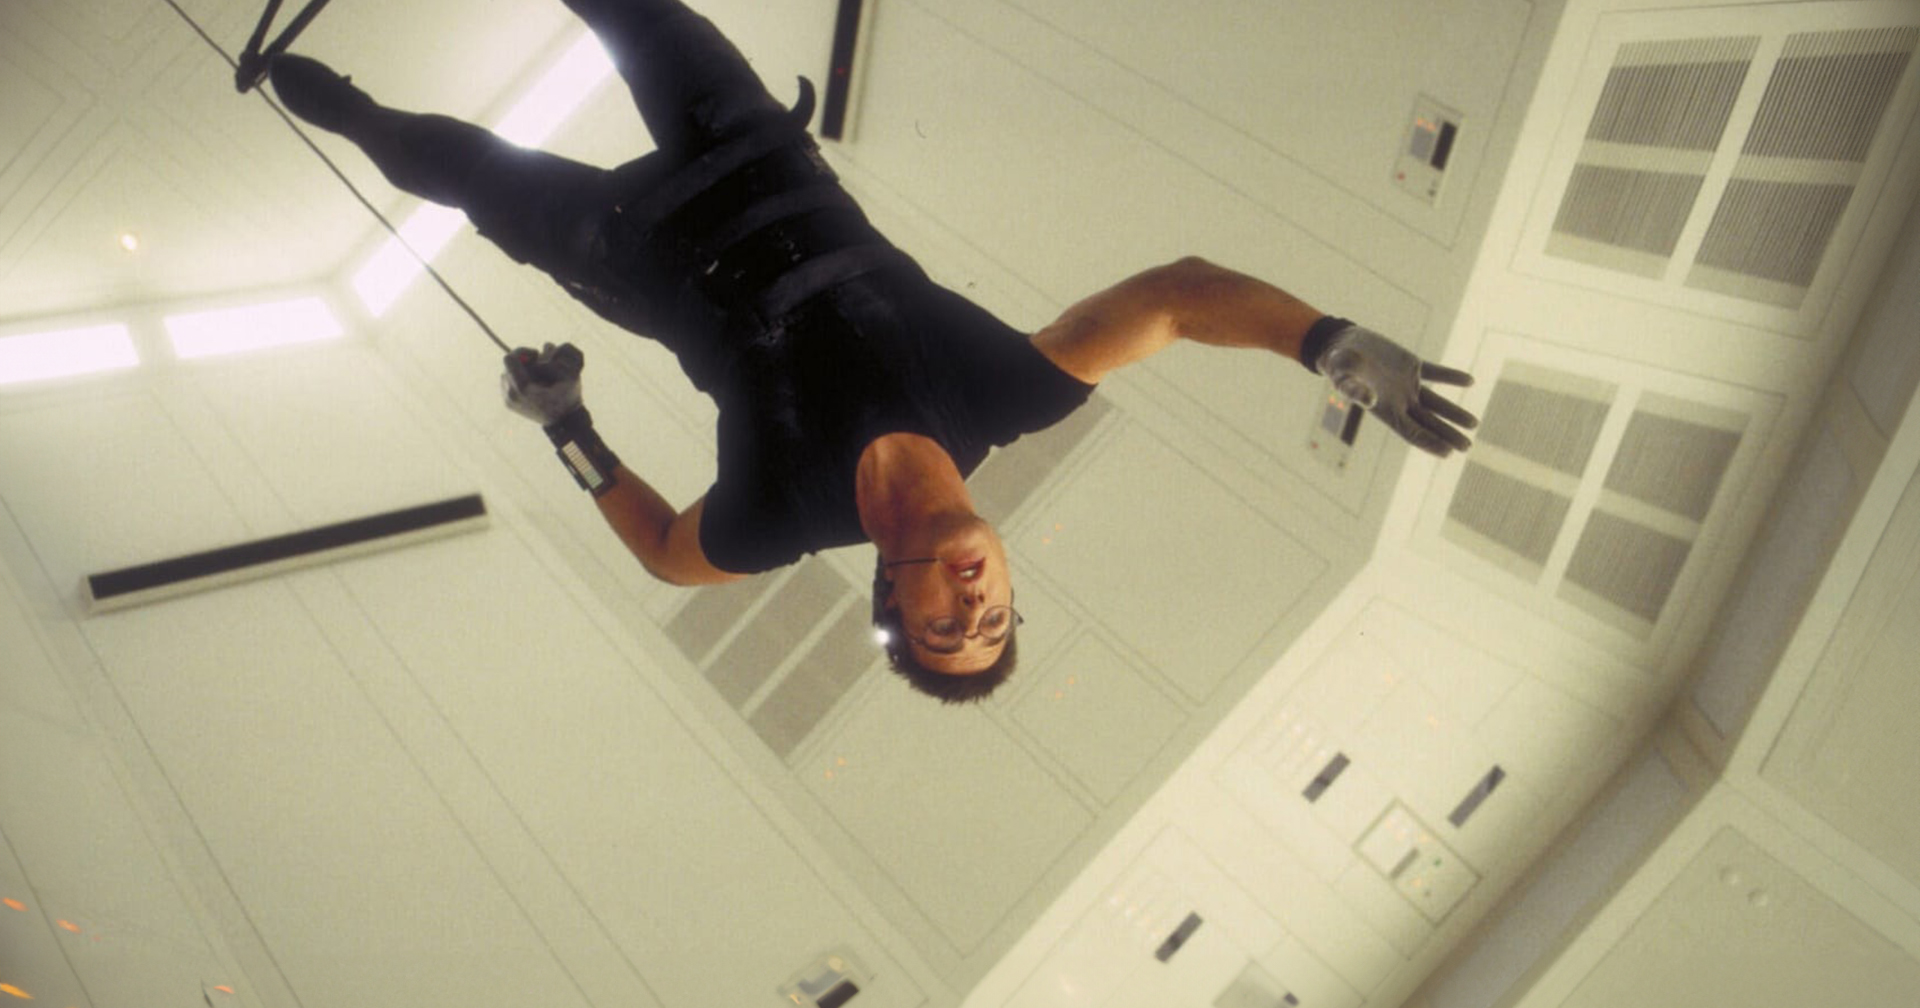 12 เกร็ดเบื้องหลังหนังแฟรนไชส์ปฏิบัติการสะท้านโลก ‘Mission: Impossible’